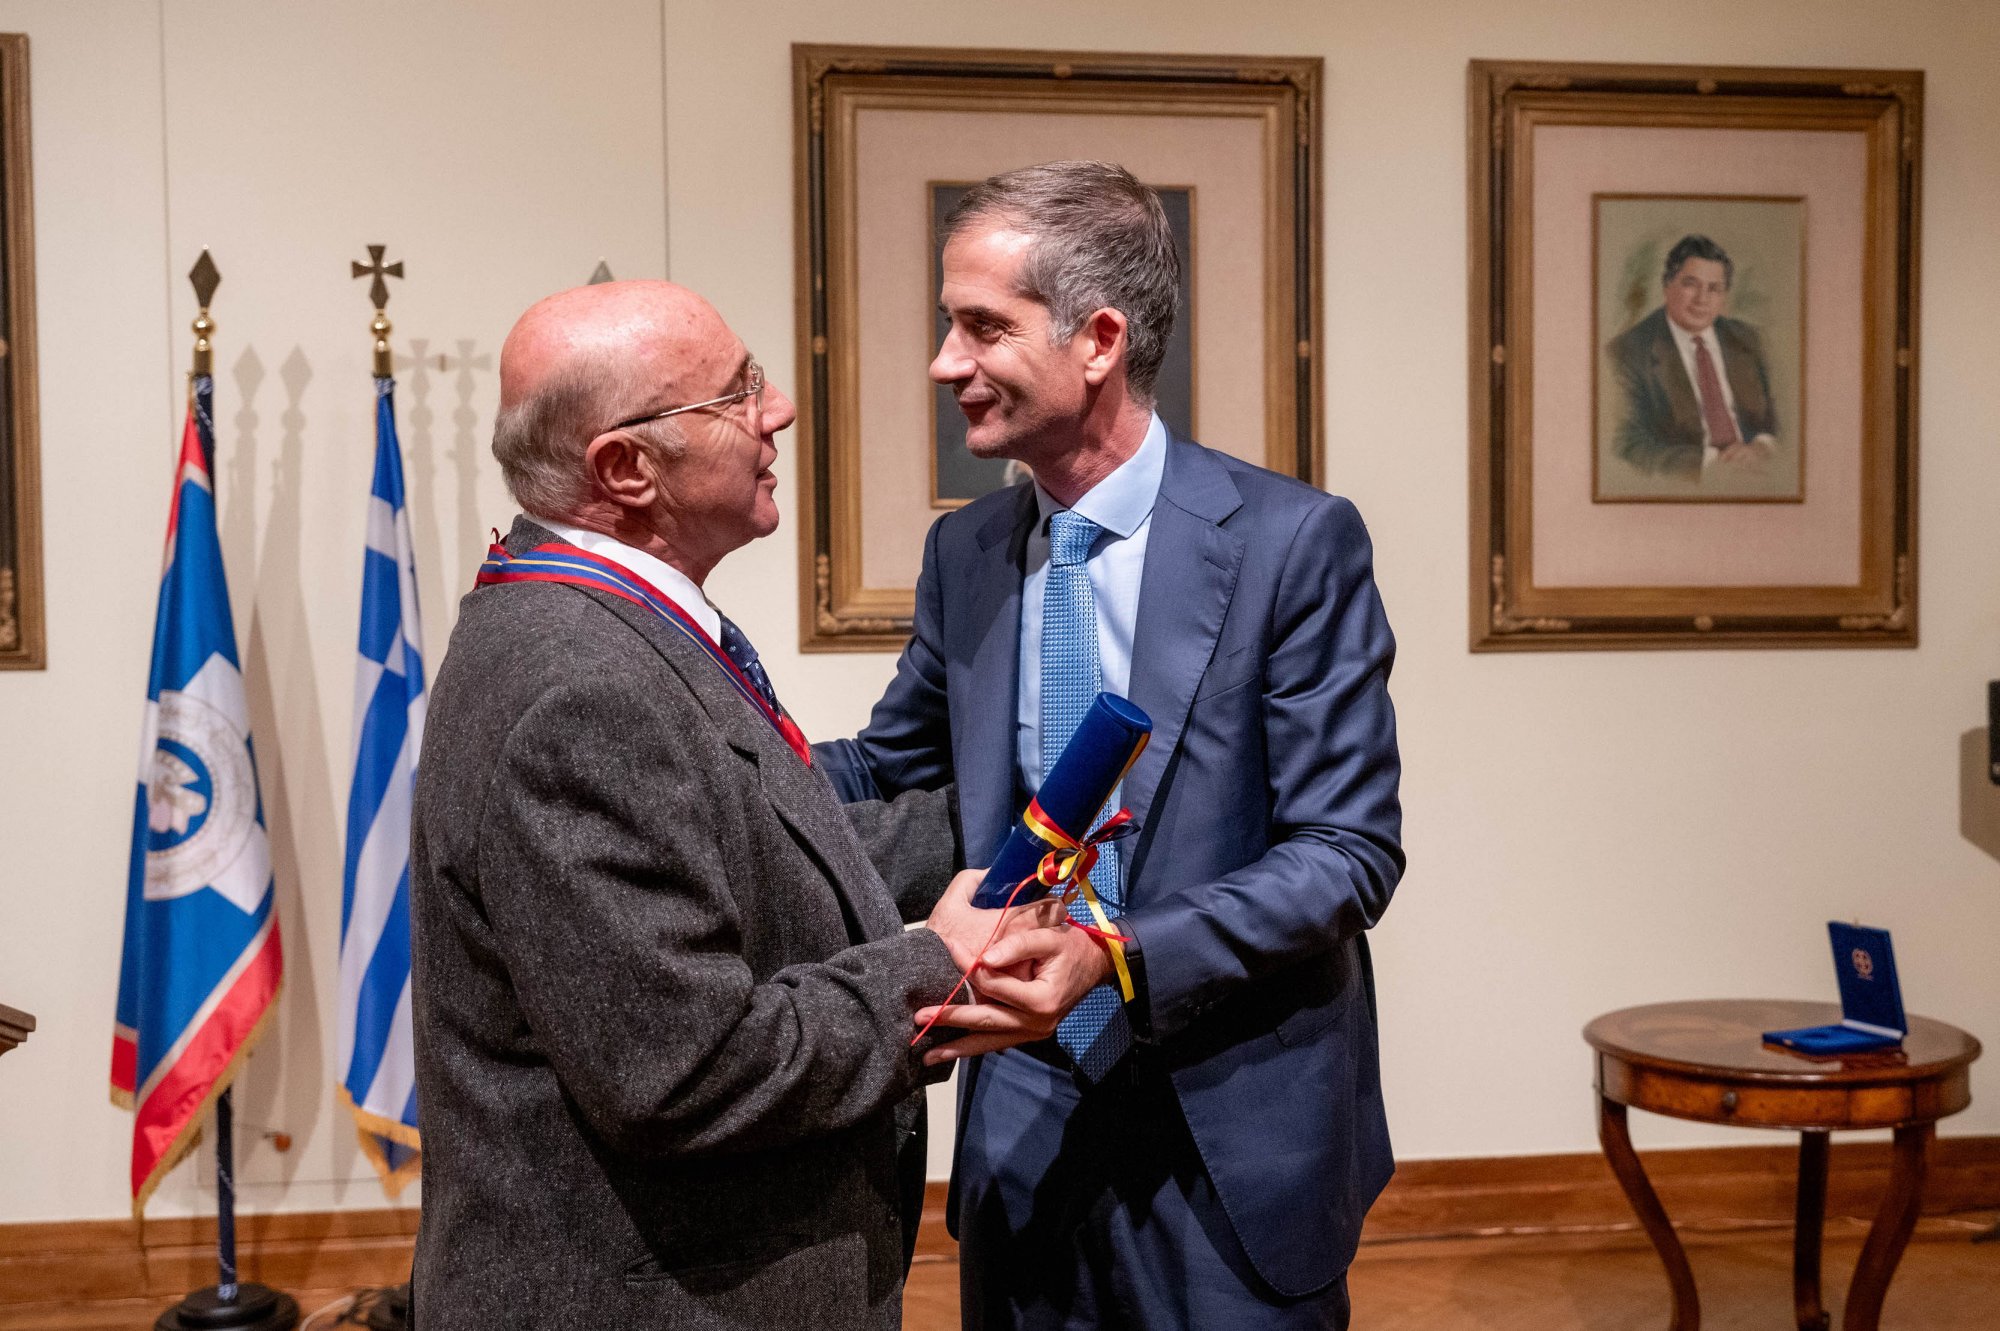 Με το Μετάλλιο του Δήμου Αθηναίων τιμήθηκε ο εμβληματικός αναμορφωτής του Φεστιβάλ Αθηνών, Γιώργος Λούκος